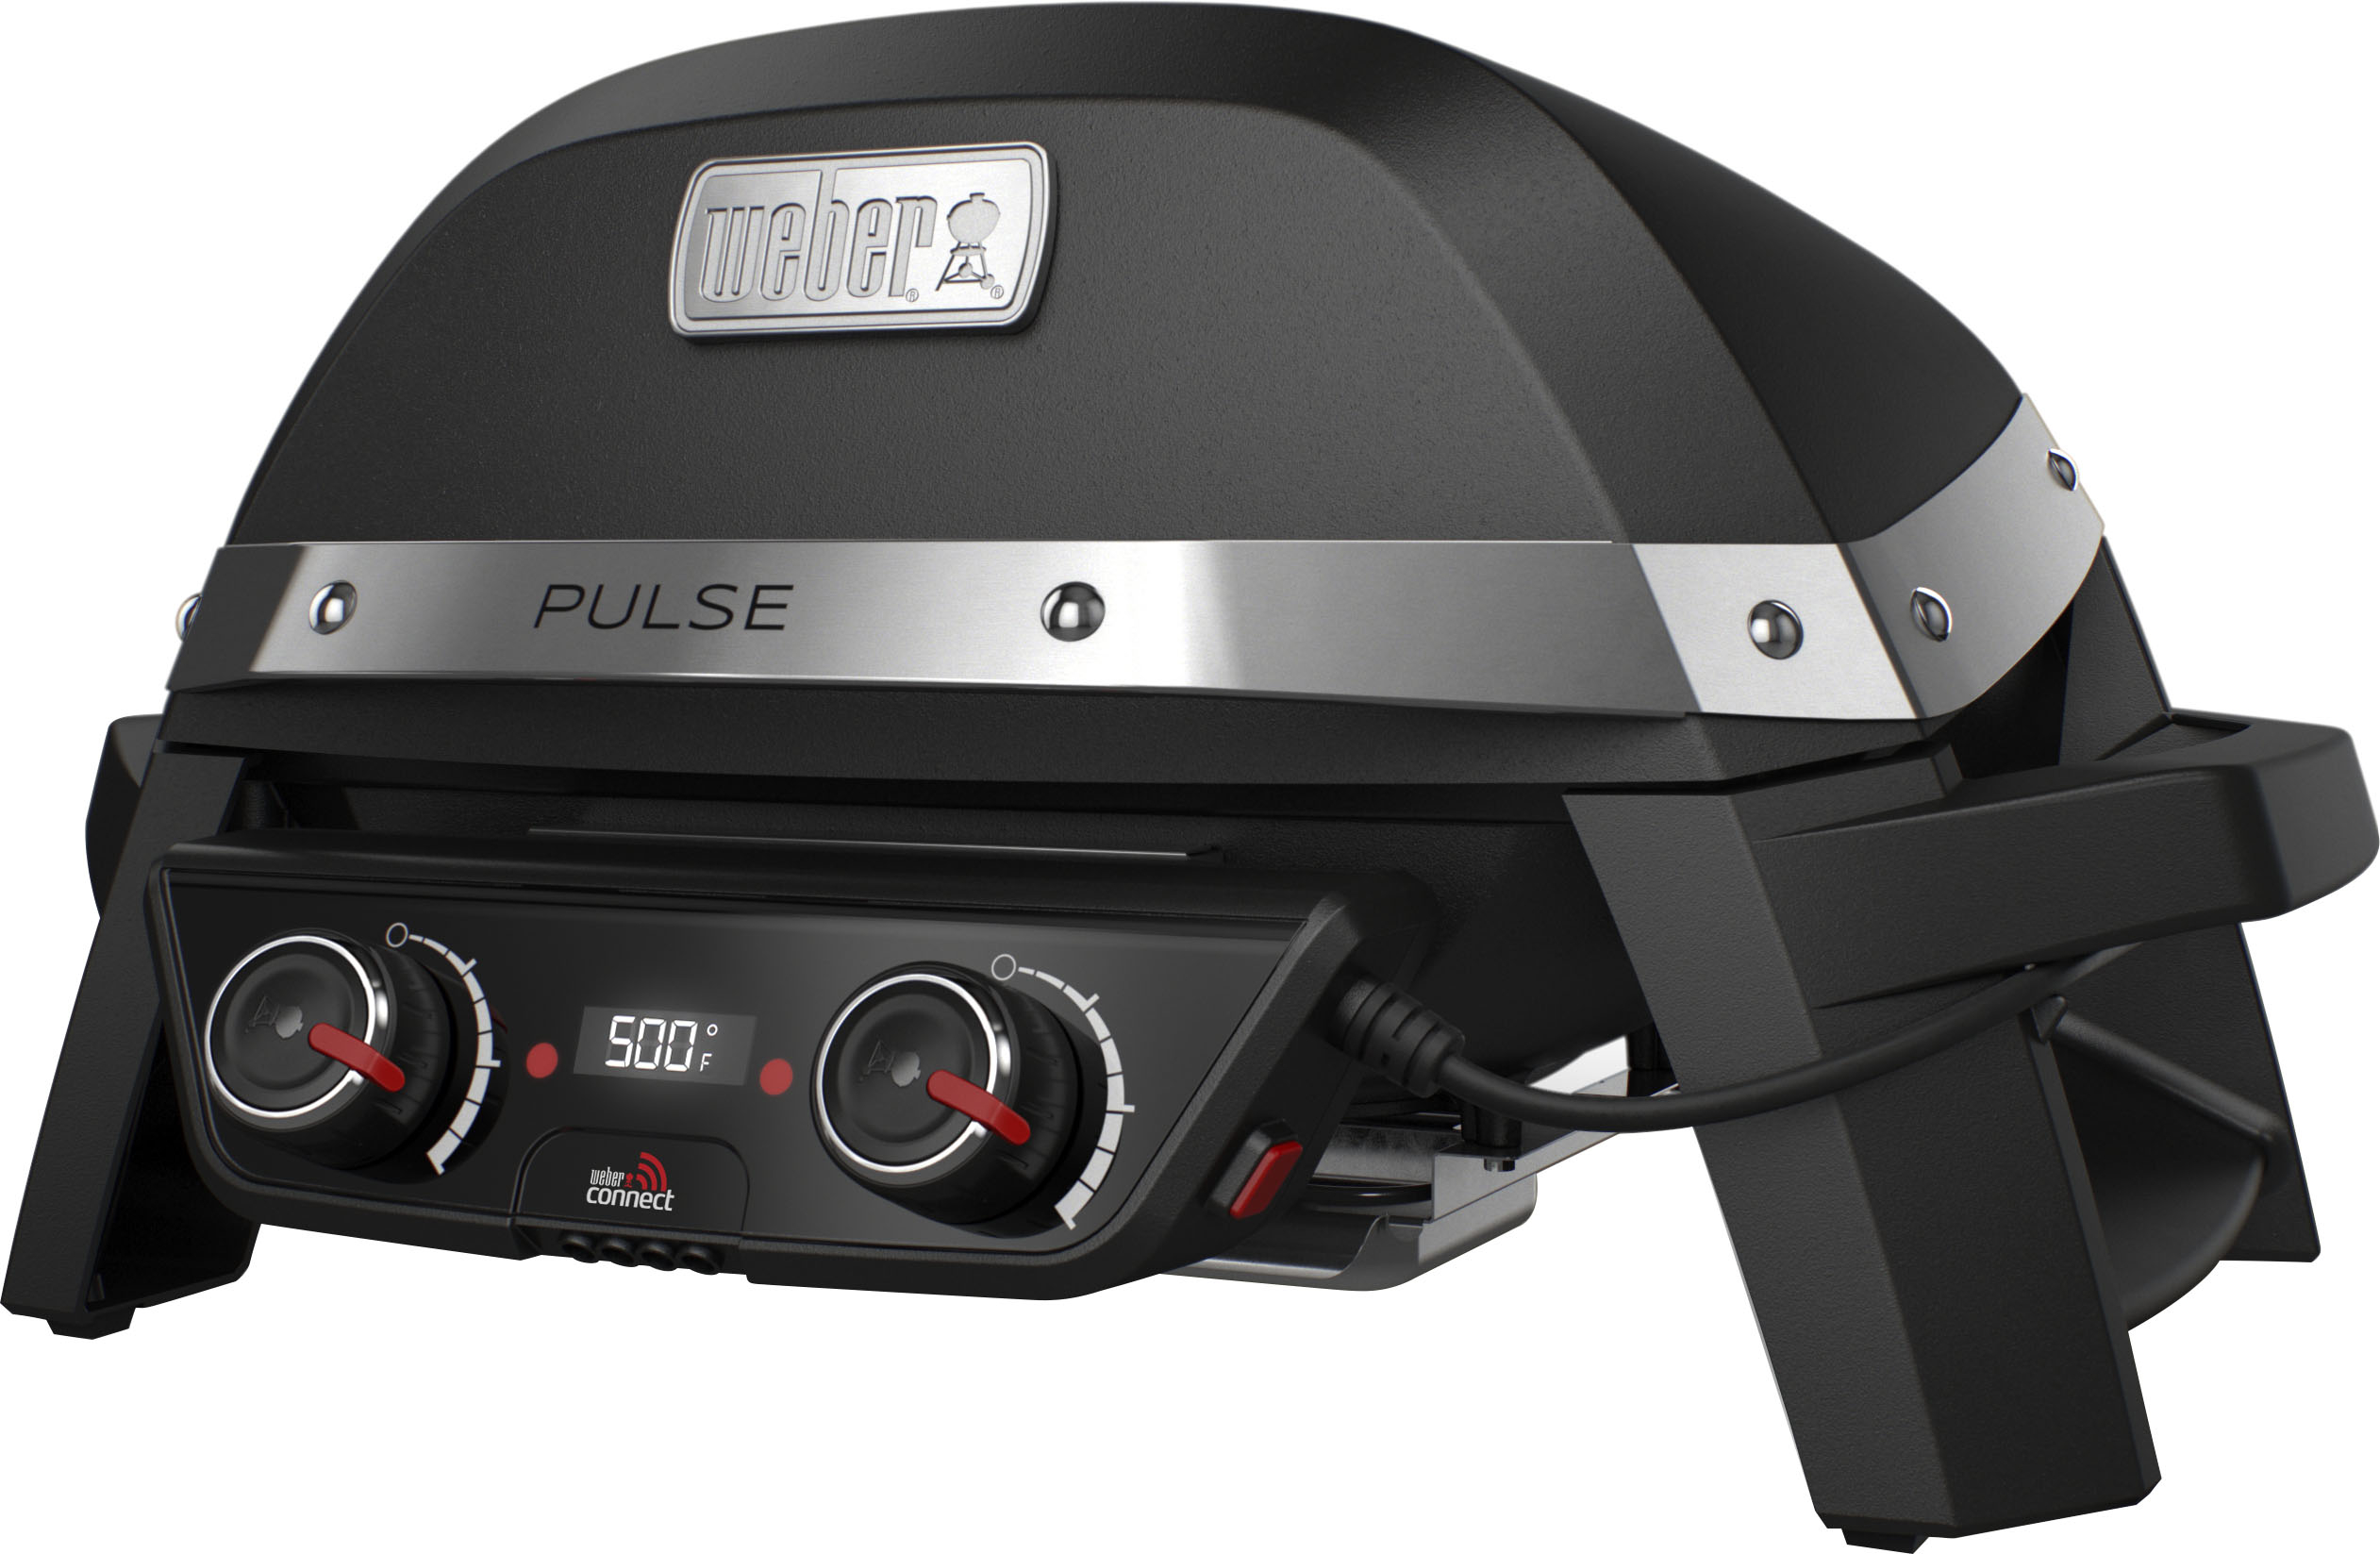 Toezicht houden Nodig hebben Buik Weber Pulse 2000 Electric Grill Black 5012001 - Best Buy